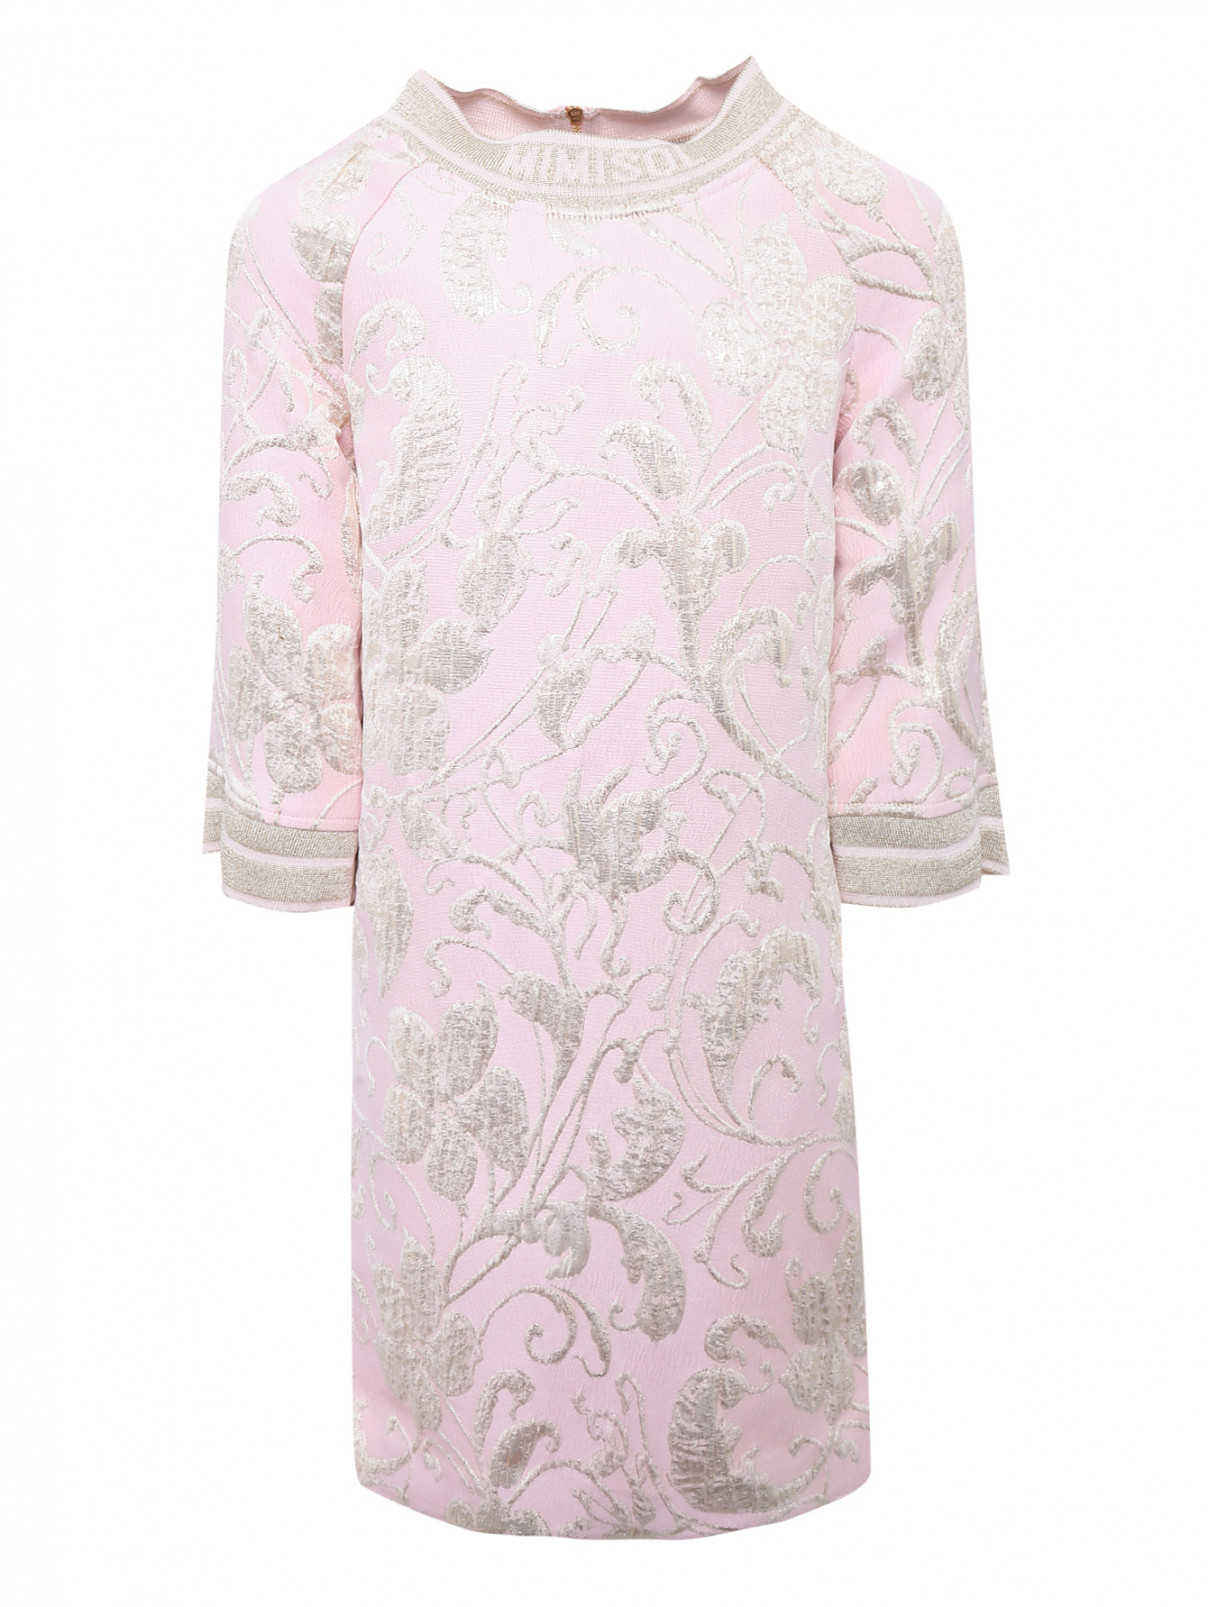 Платье свободного фасона из жаккарда MiMiSol  –  Общий вид  – Цвет:  Розовый